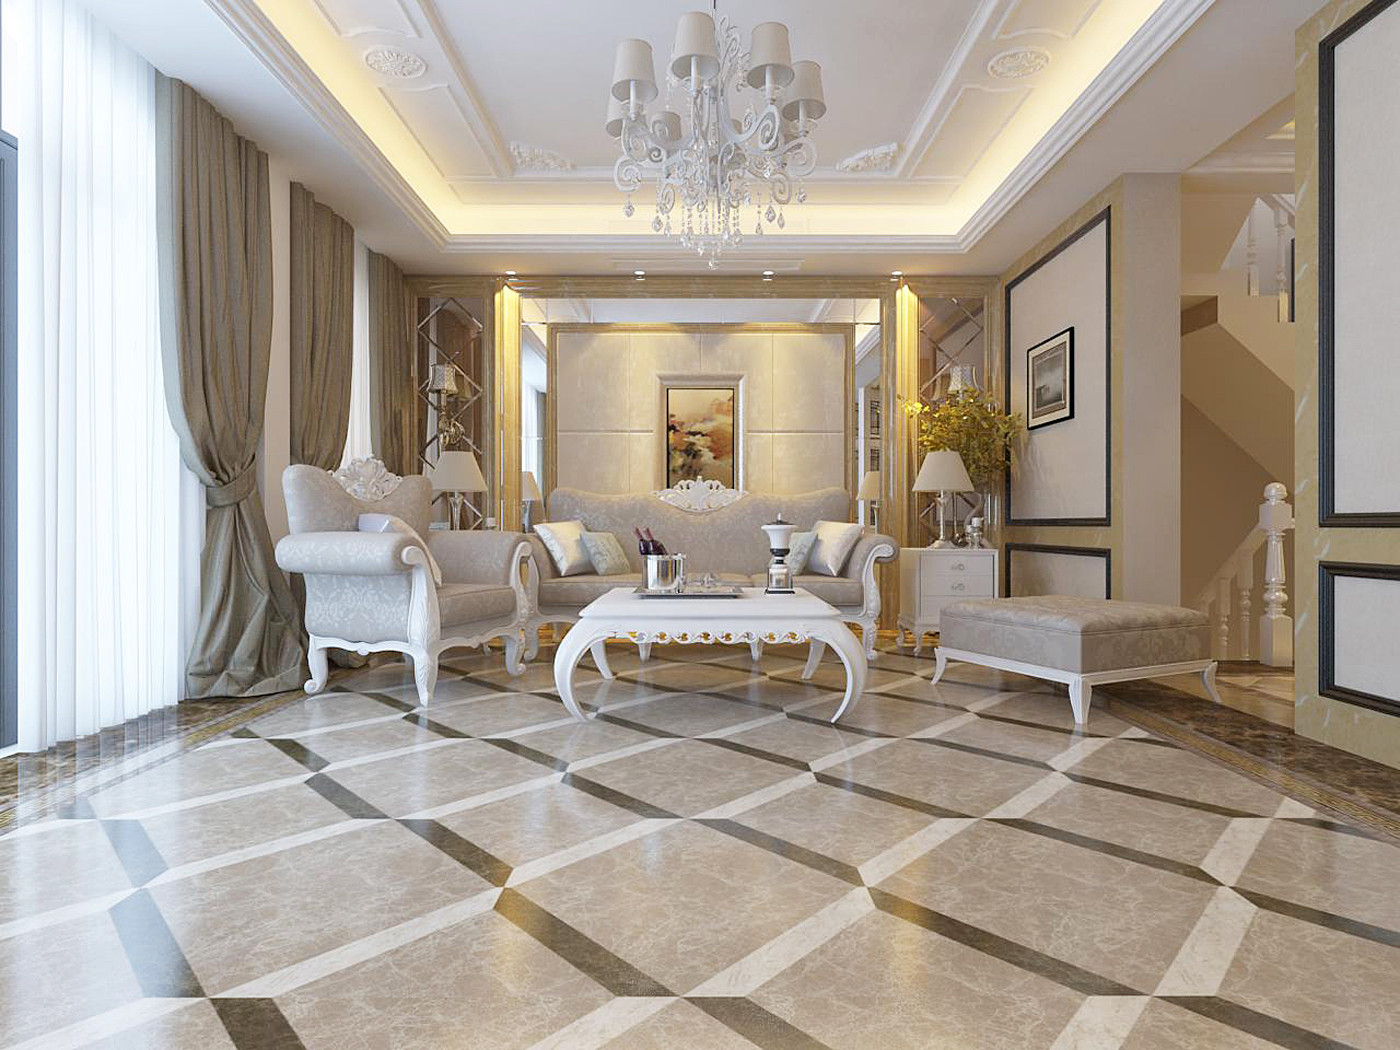 豪华型装修,别墅装修,140平米以上装修,客厅,新古典风格,欧式风格,沙发背景墙,金色